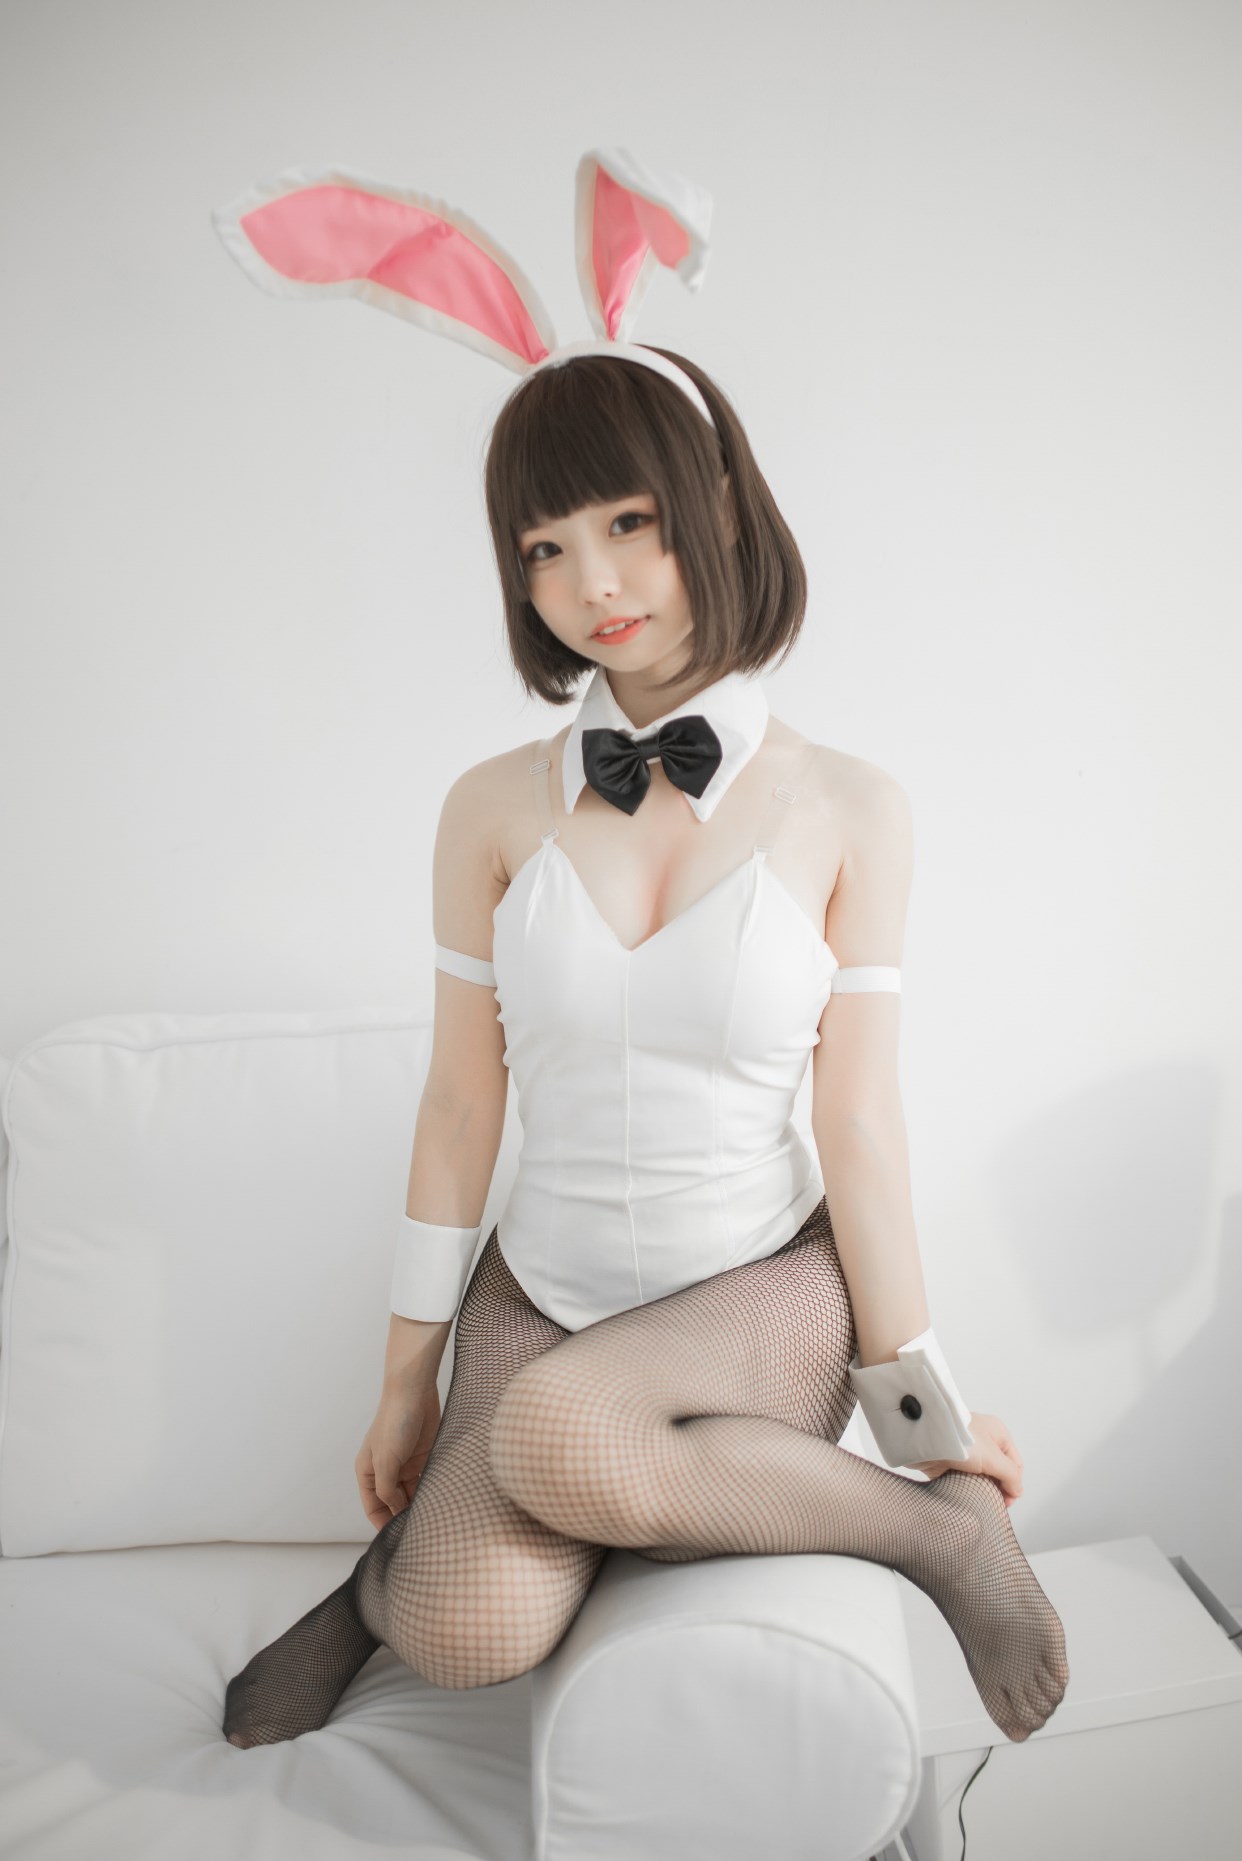 【兔玩映画】兔女郎vol.22-萝莉 兔玩映画 第22张